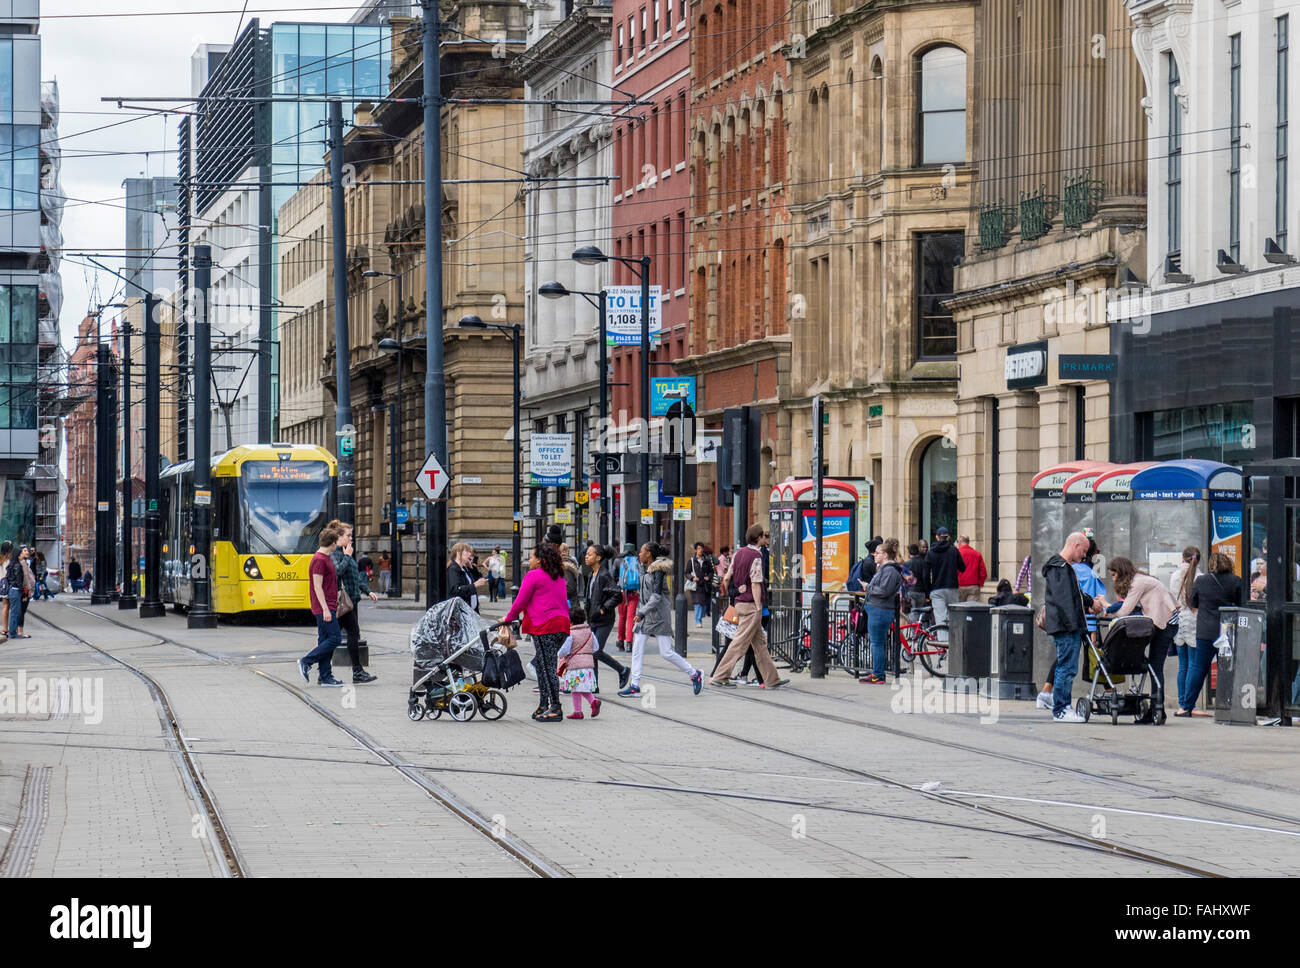 Personnes et de tramway dans le centre-ville de Manchester UK Banque D'Images